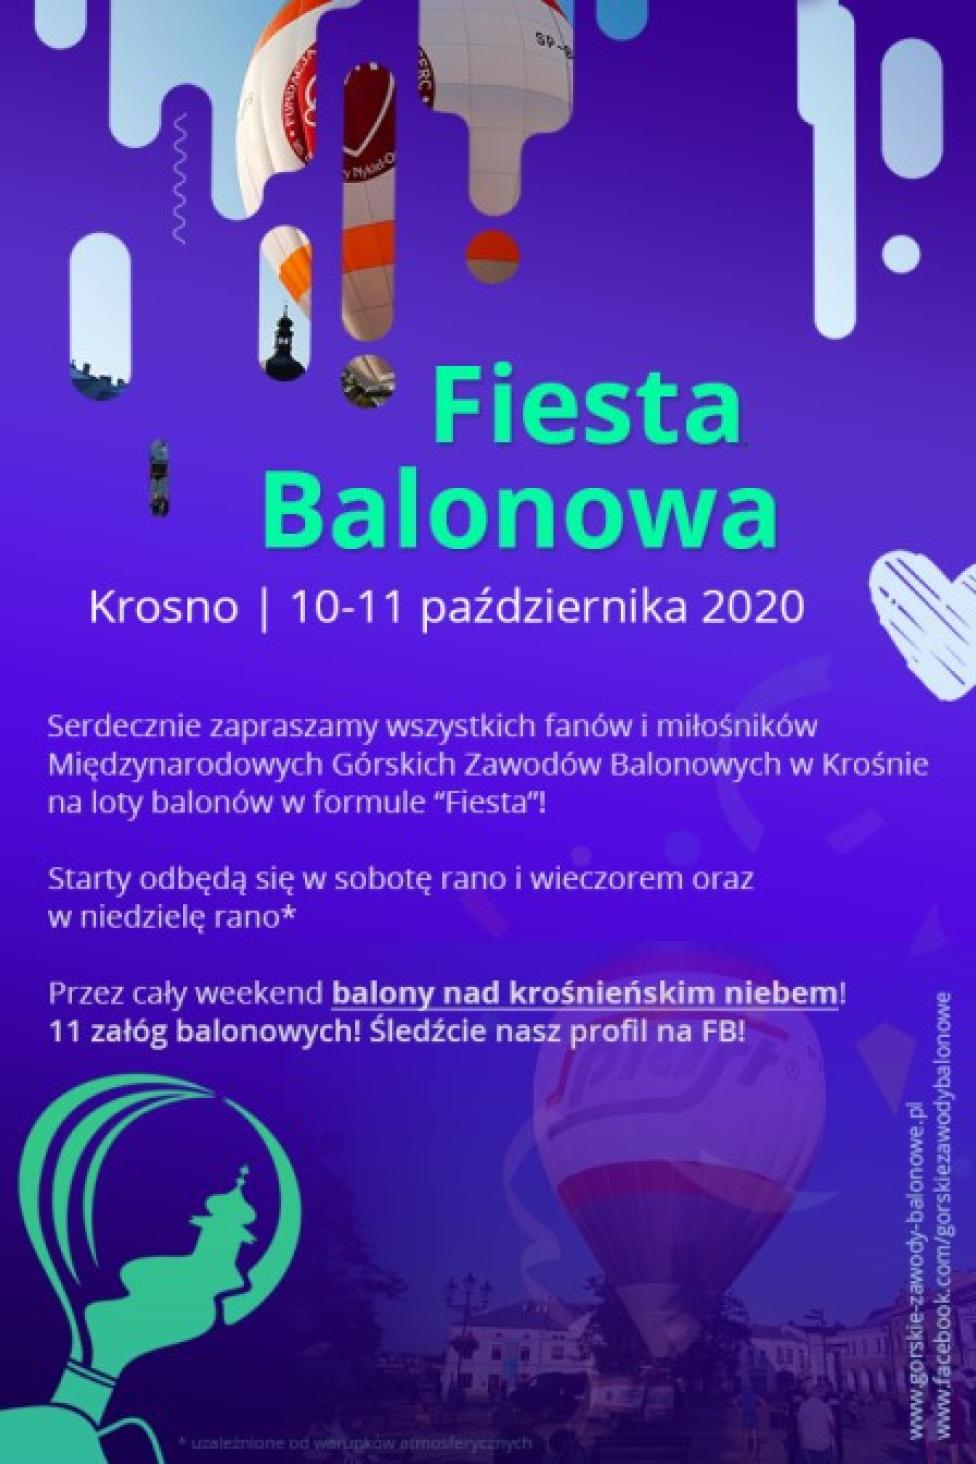 Balonowa Fiesta w Krośnie (fot. gorskie-zawody-balonowe.pl)